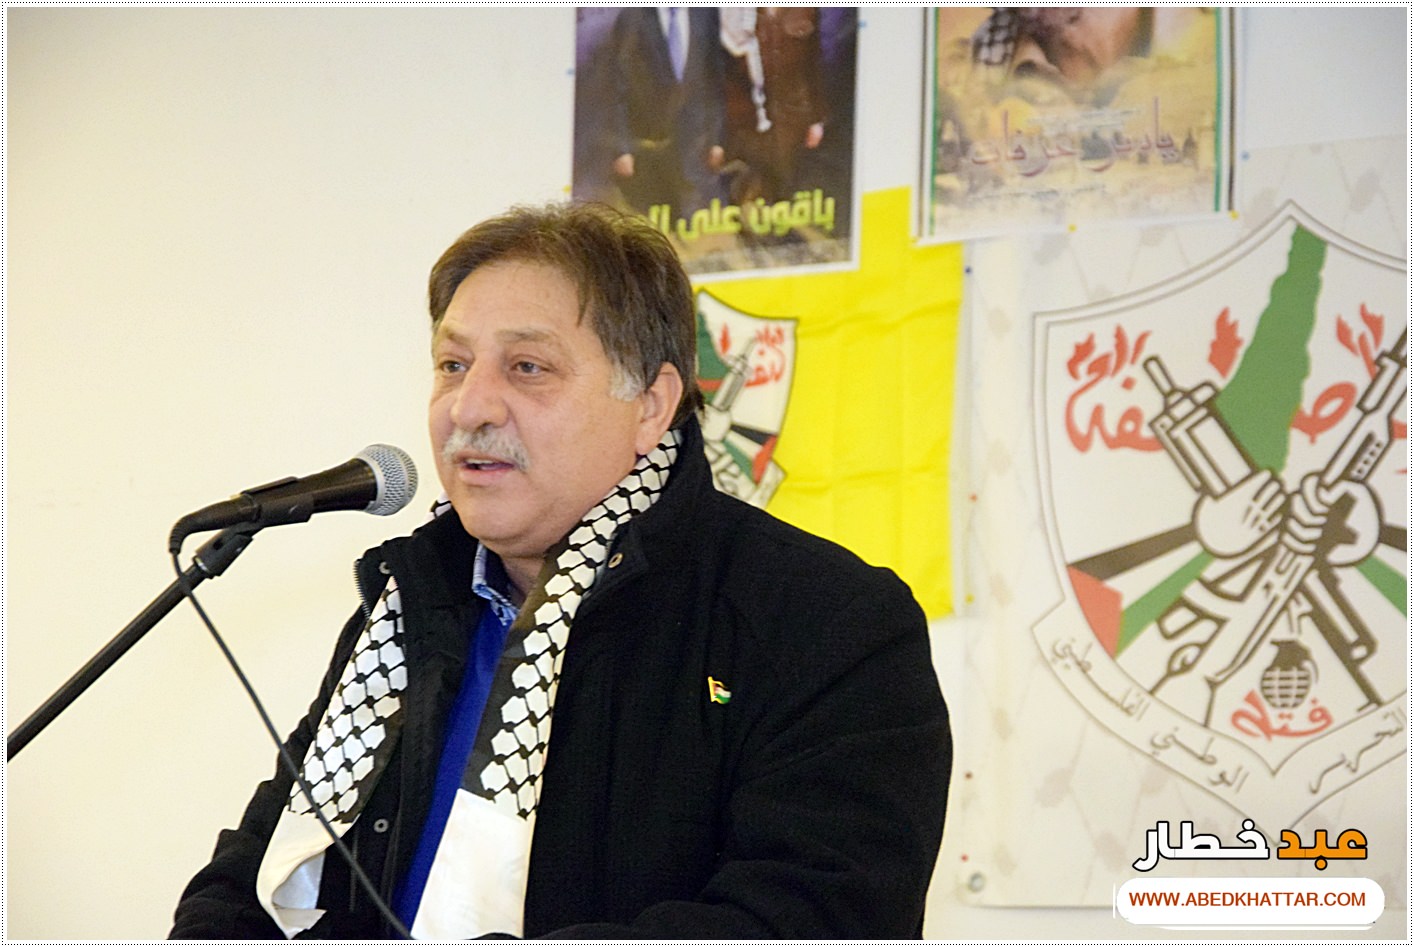 احياء الذكرى 54 لانطلاقة الثورة الفلسطينية في برلين